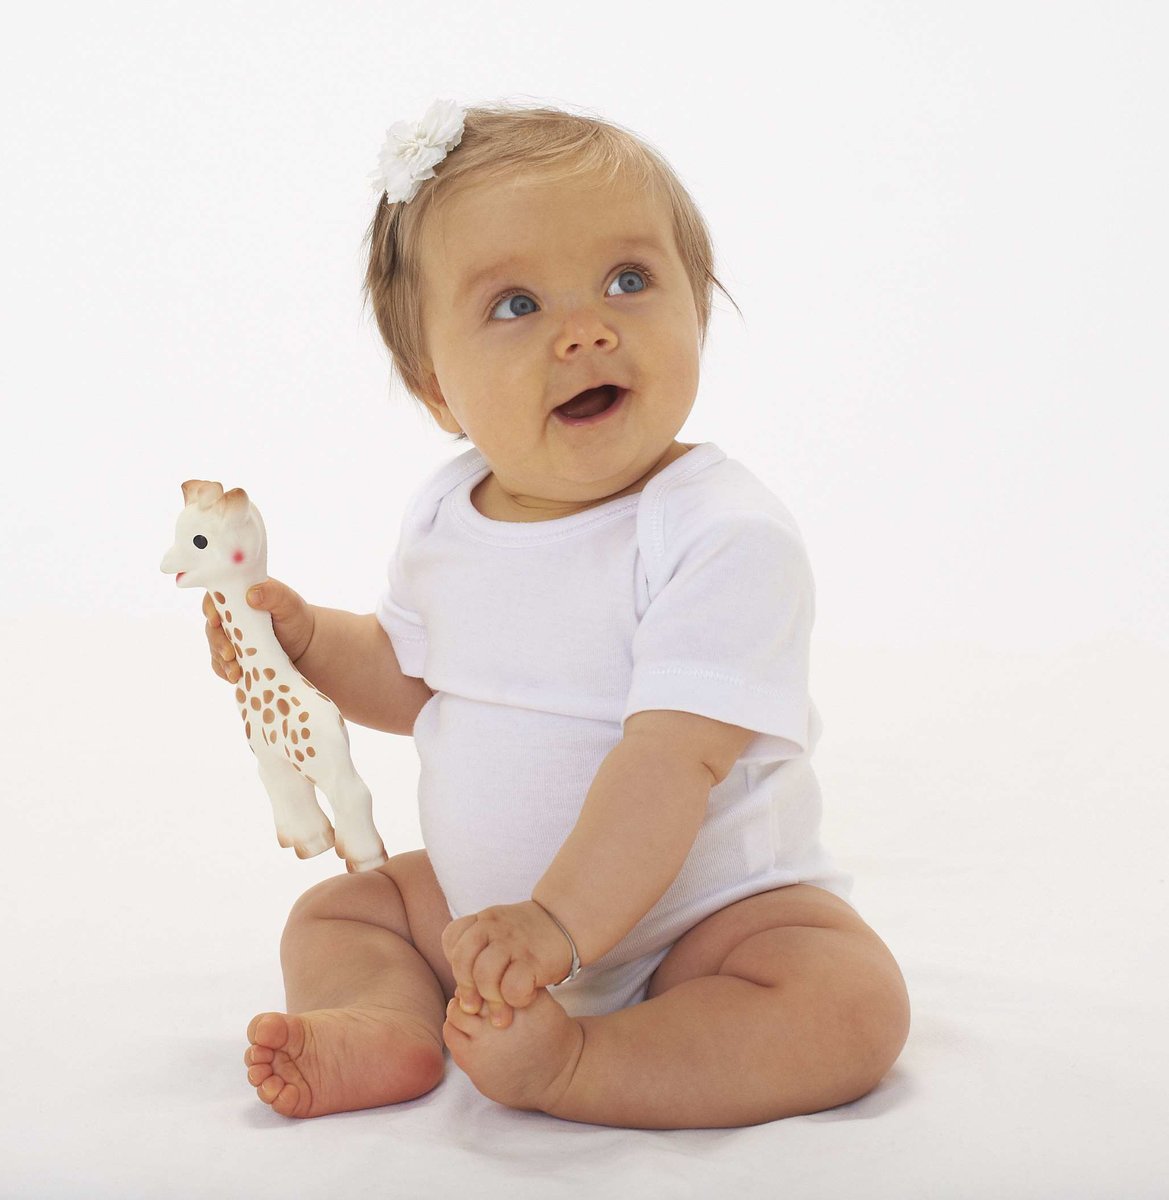 Babyspielzeug von barbarella – Mode für Prinzen und Prinzessinnen